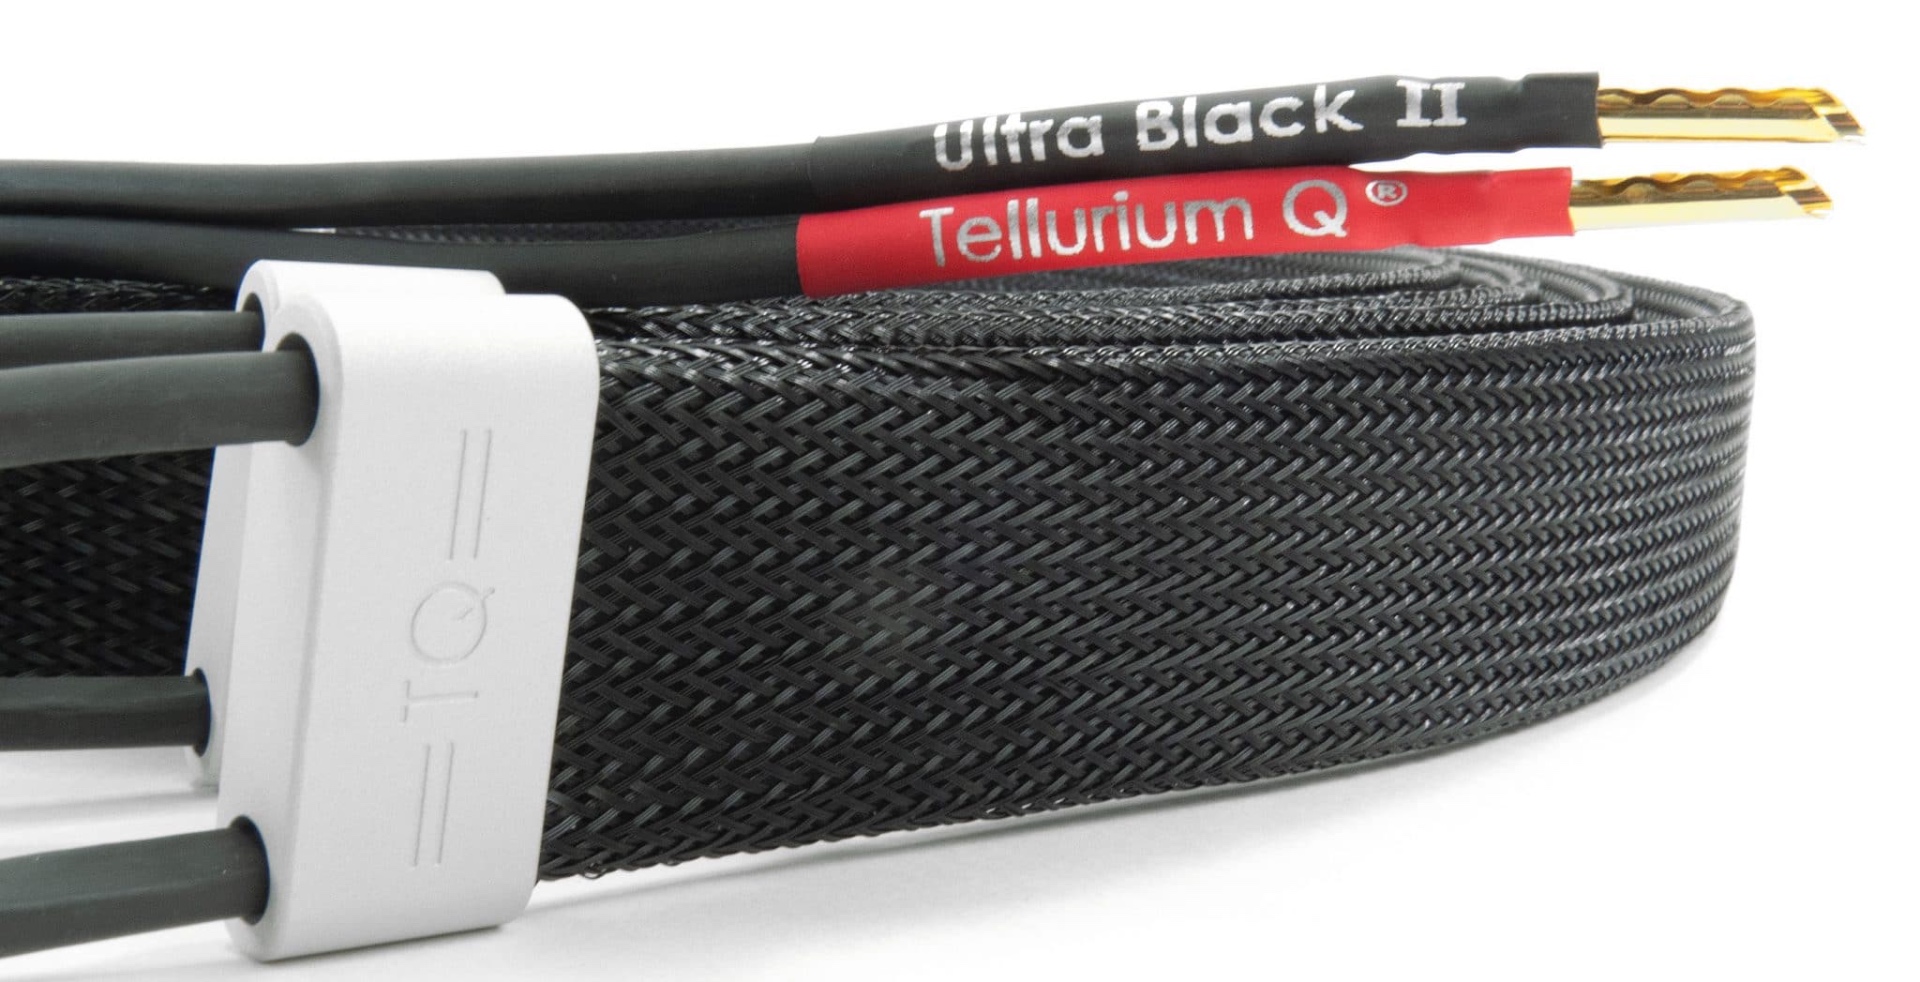 Paul Rigby von "The Audiophile Man" testet das Tellurium Q Ultra Black II Lautsprecherkabel und verleiht 9/10 Punkten - Deeply Groovy